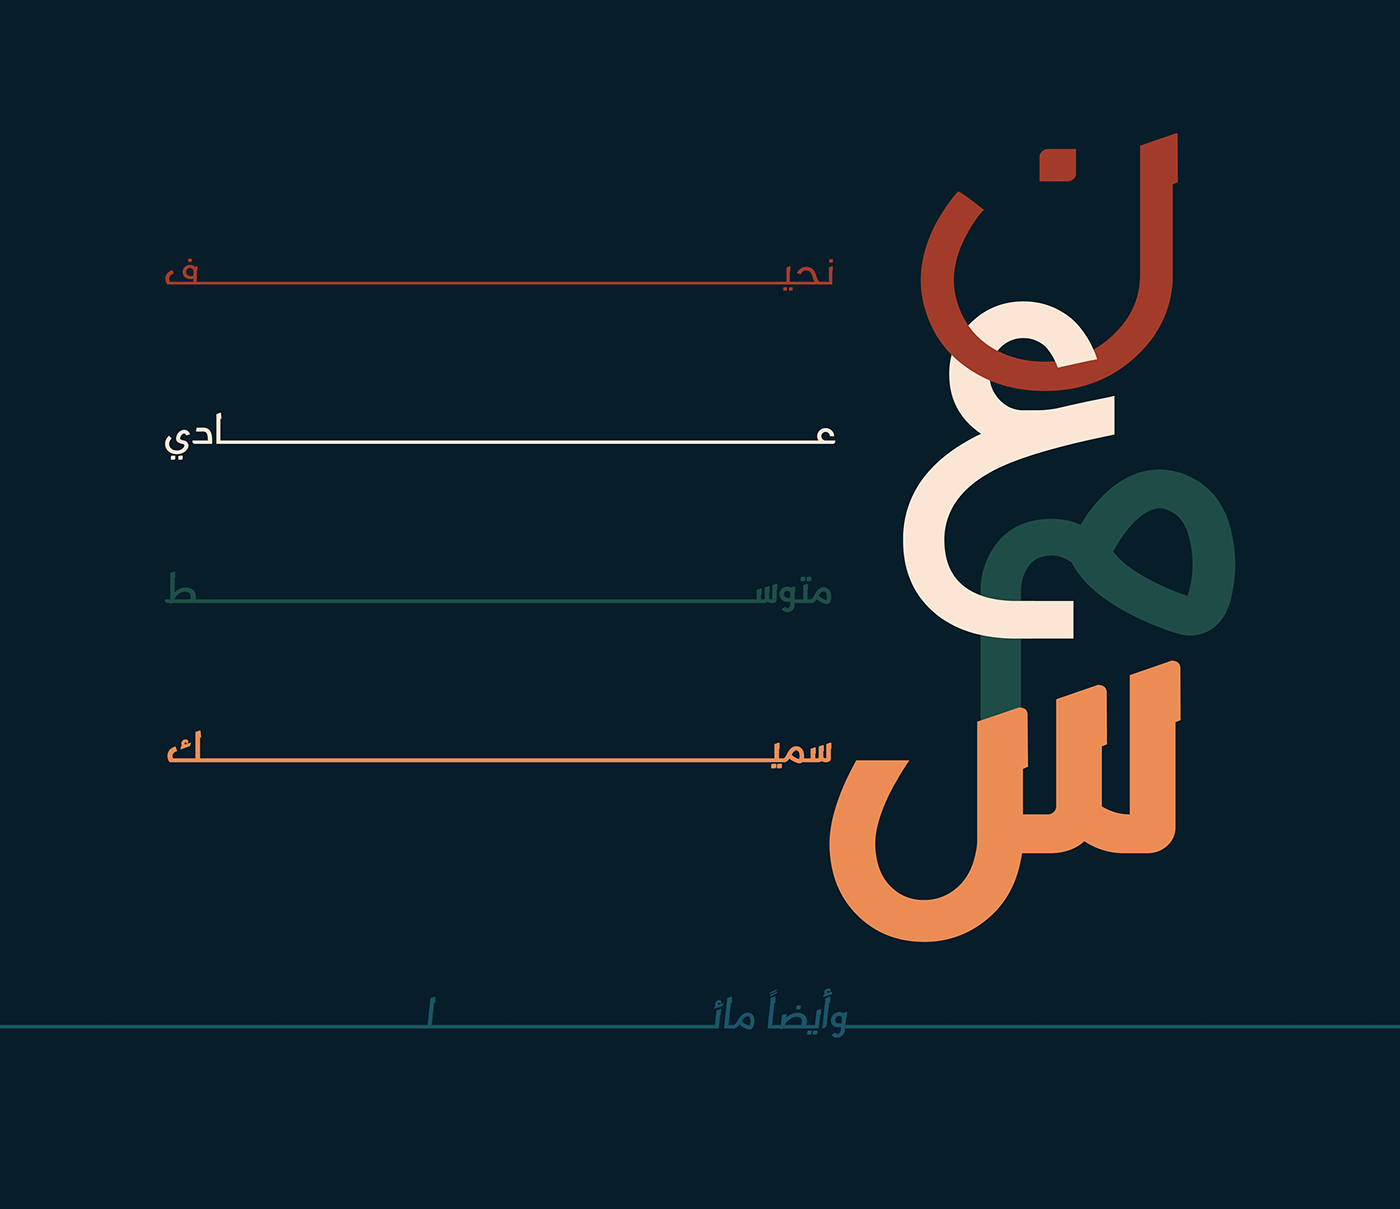 Abd ElRady Free Font - arabic